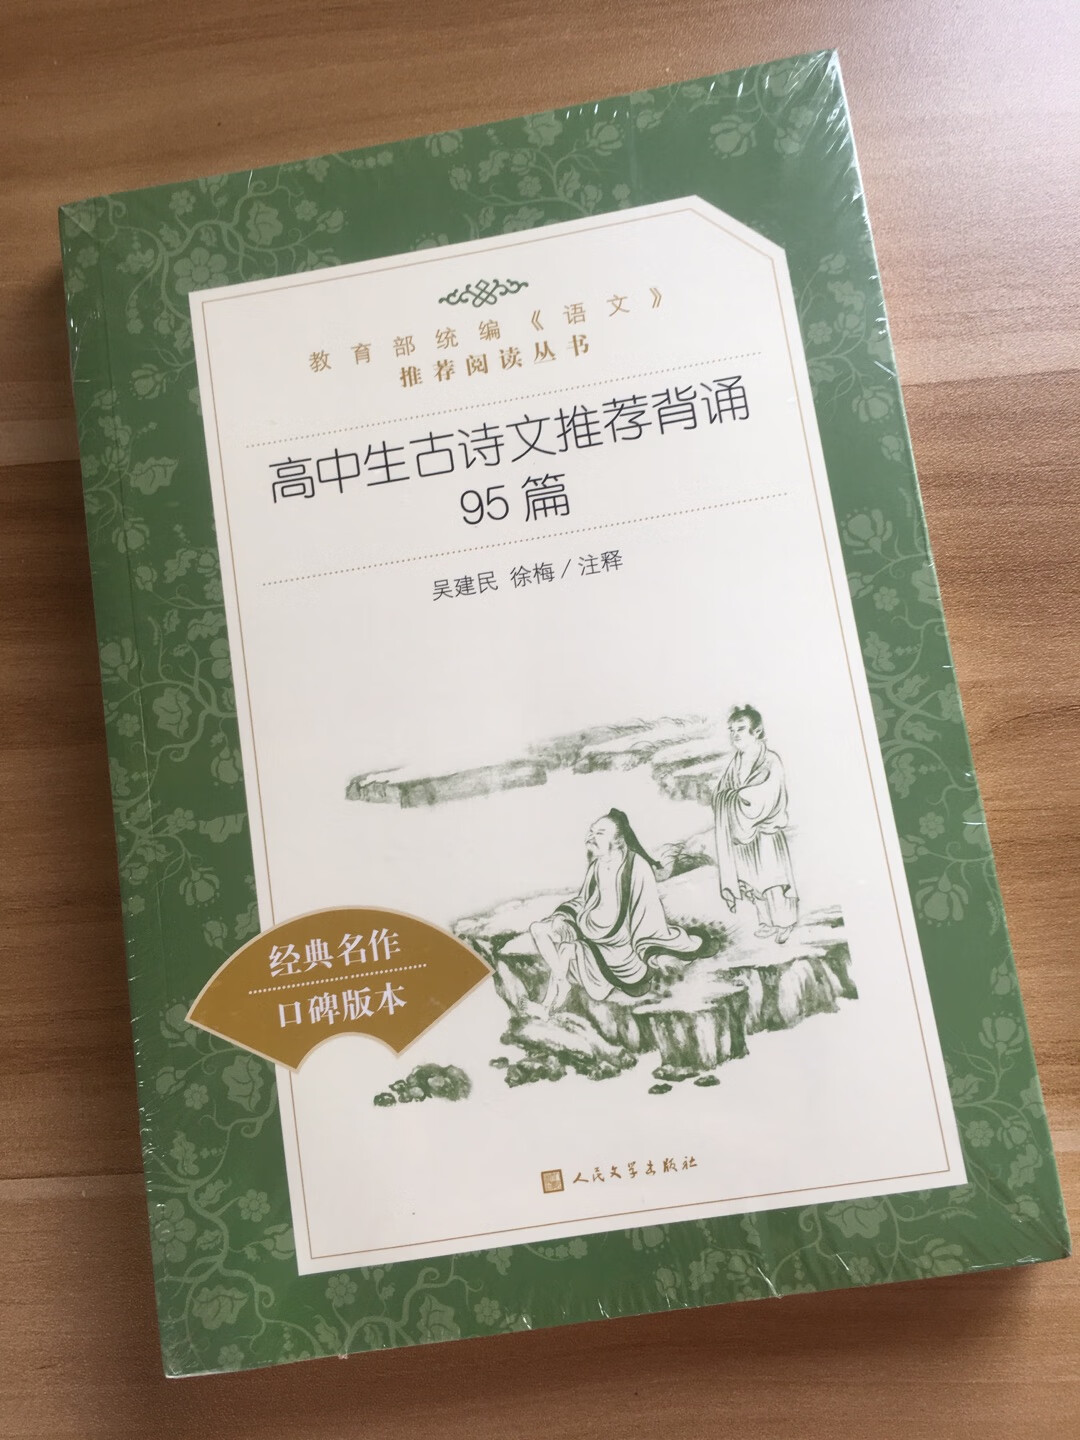 书本嗯不错，纸质也挺好，回味回味经典，有空可以看看，好好体会中华文化的博大精深。